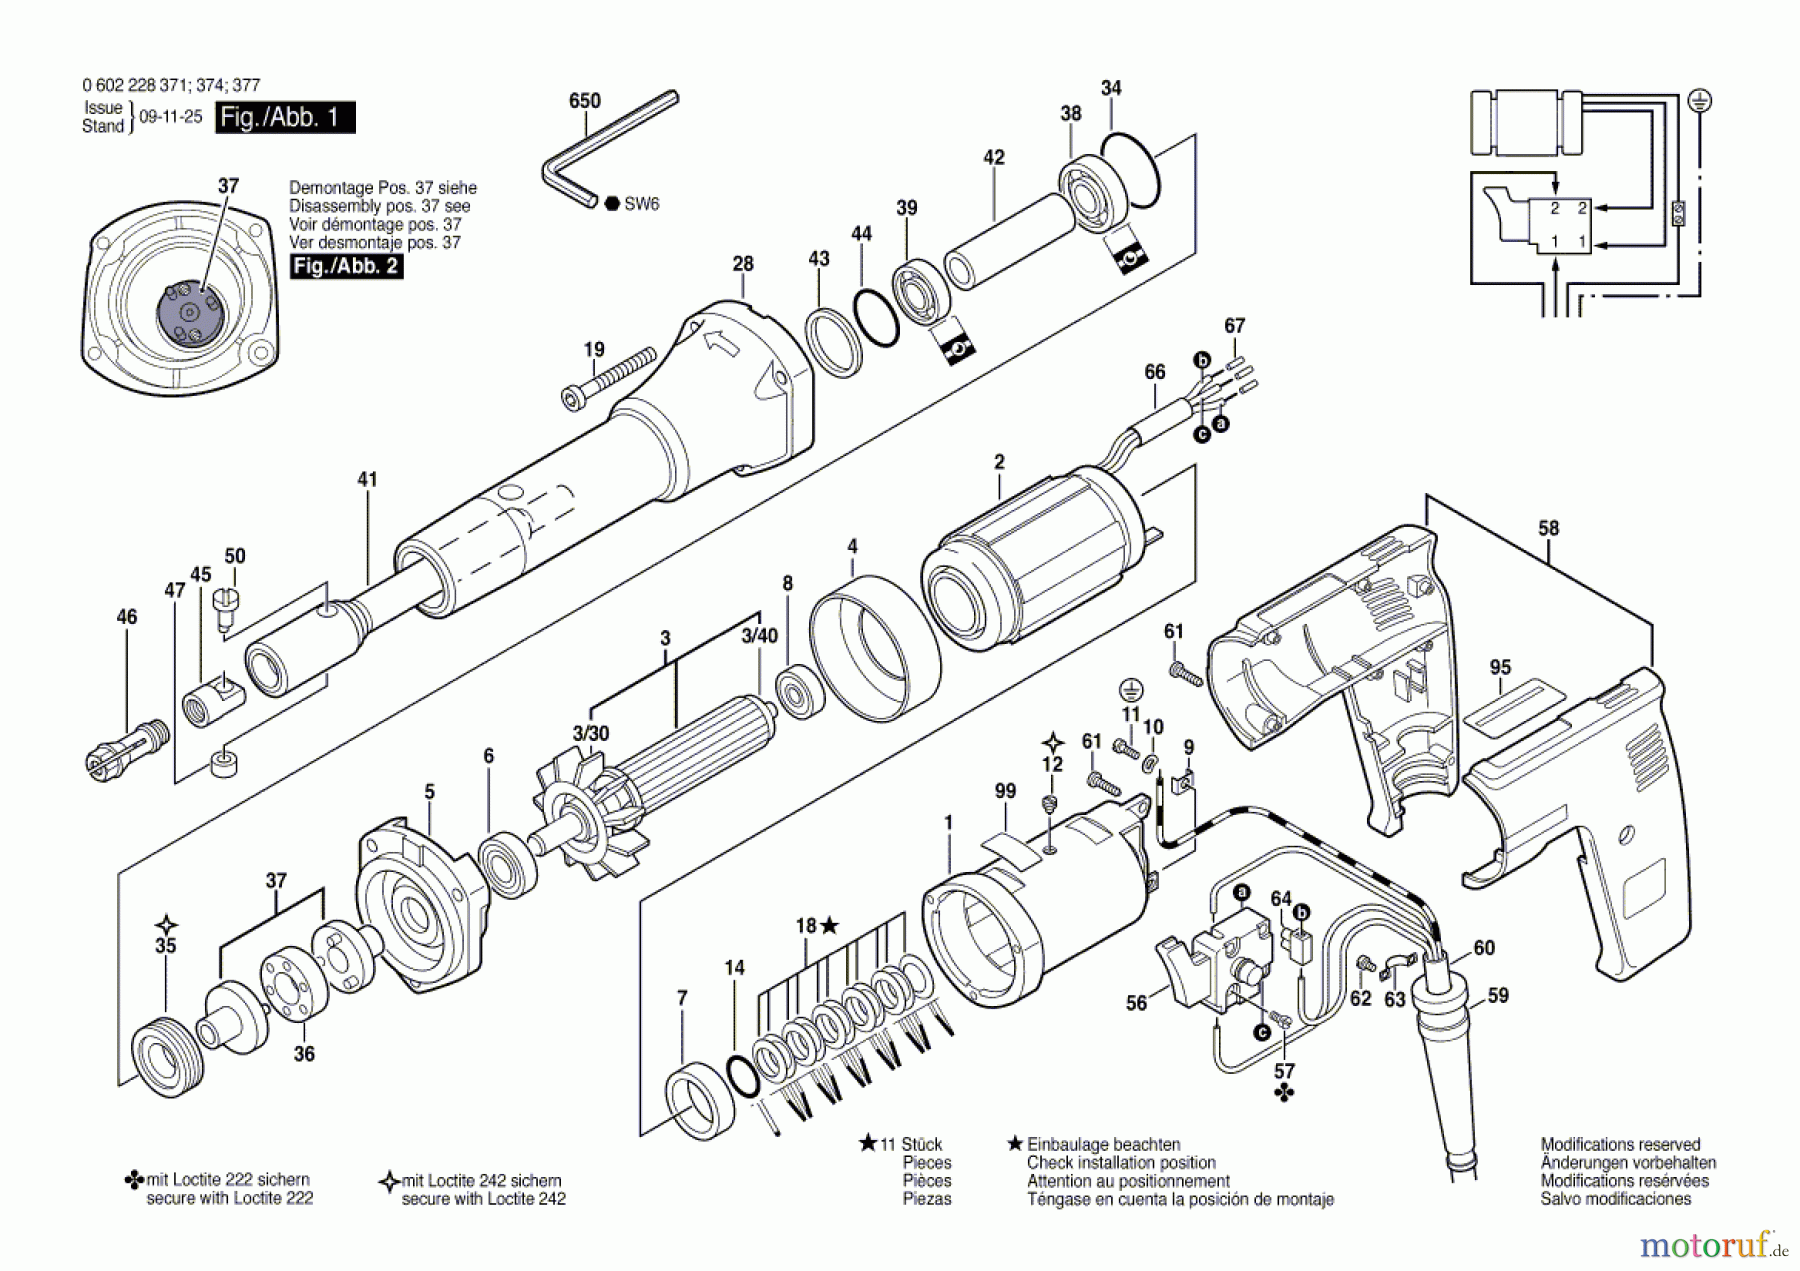  Bosch Werkzeug Geradschleifer ---- Seite 1